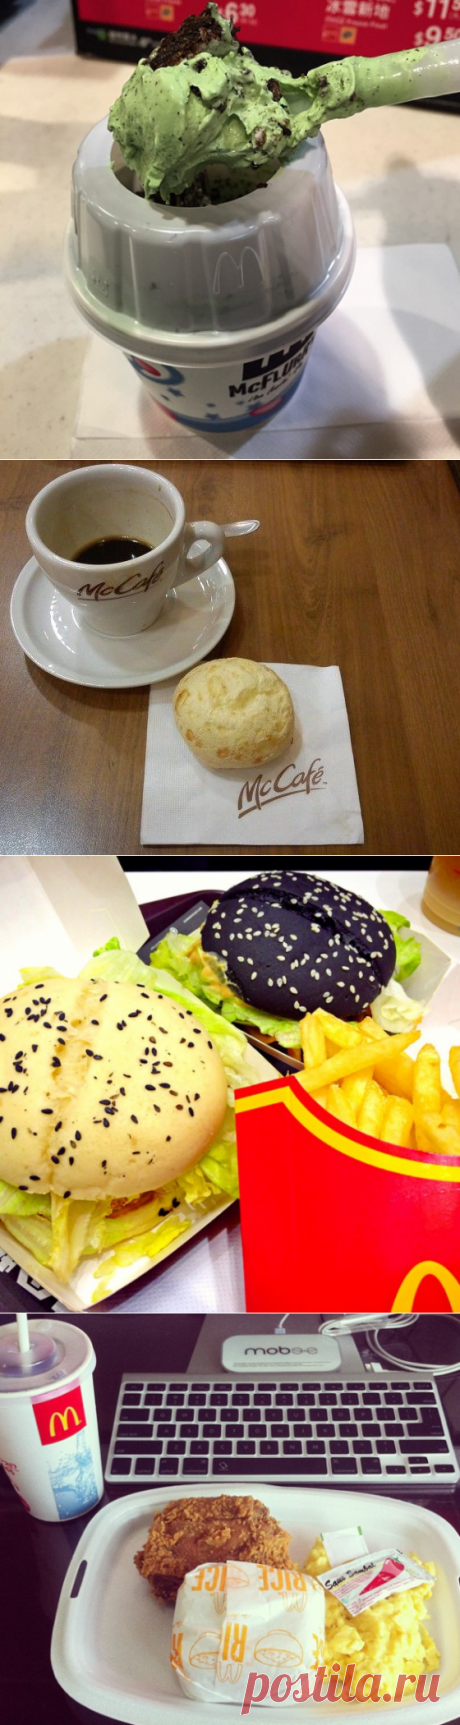 Оригинальные блюда в ресторанах McDonald's разных стран / Туристический спутник